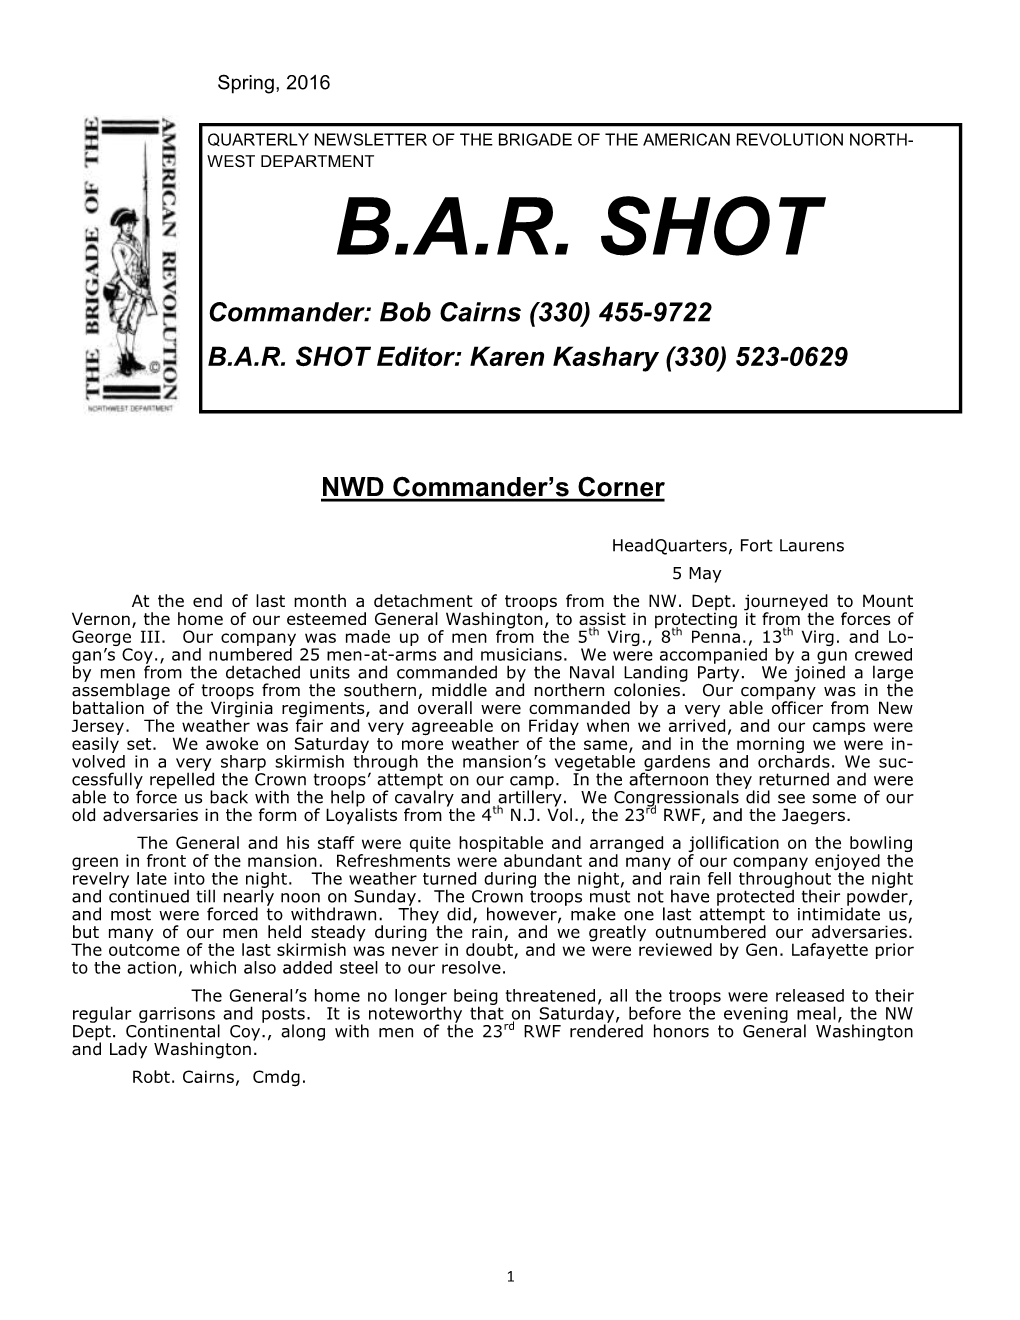 B.A.R. SHOT Commander: Bob Cairns (330) 455-9722 B.A.R